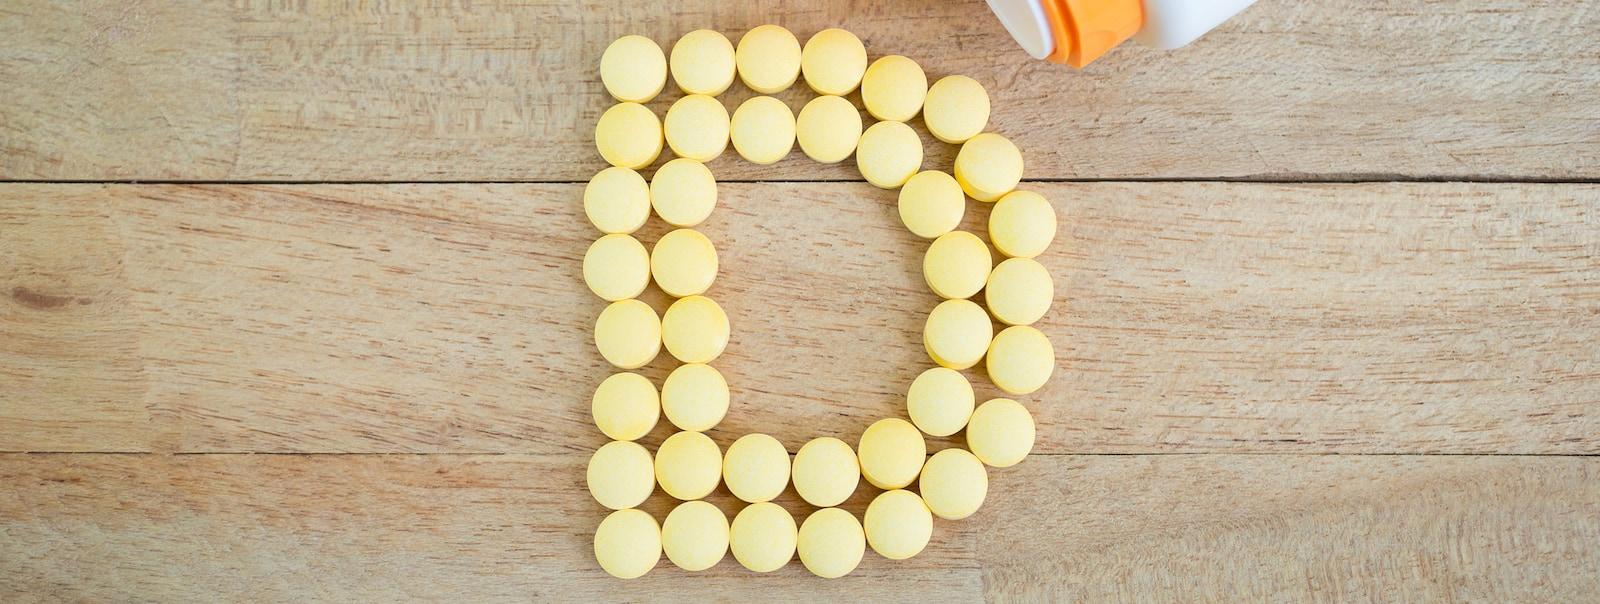 Pilules jaunes formant la lettre D sur une surface en bois